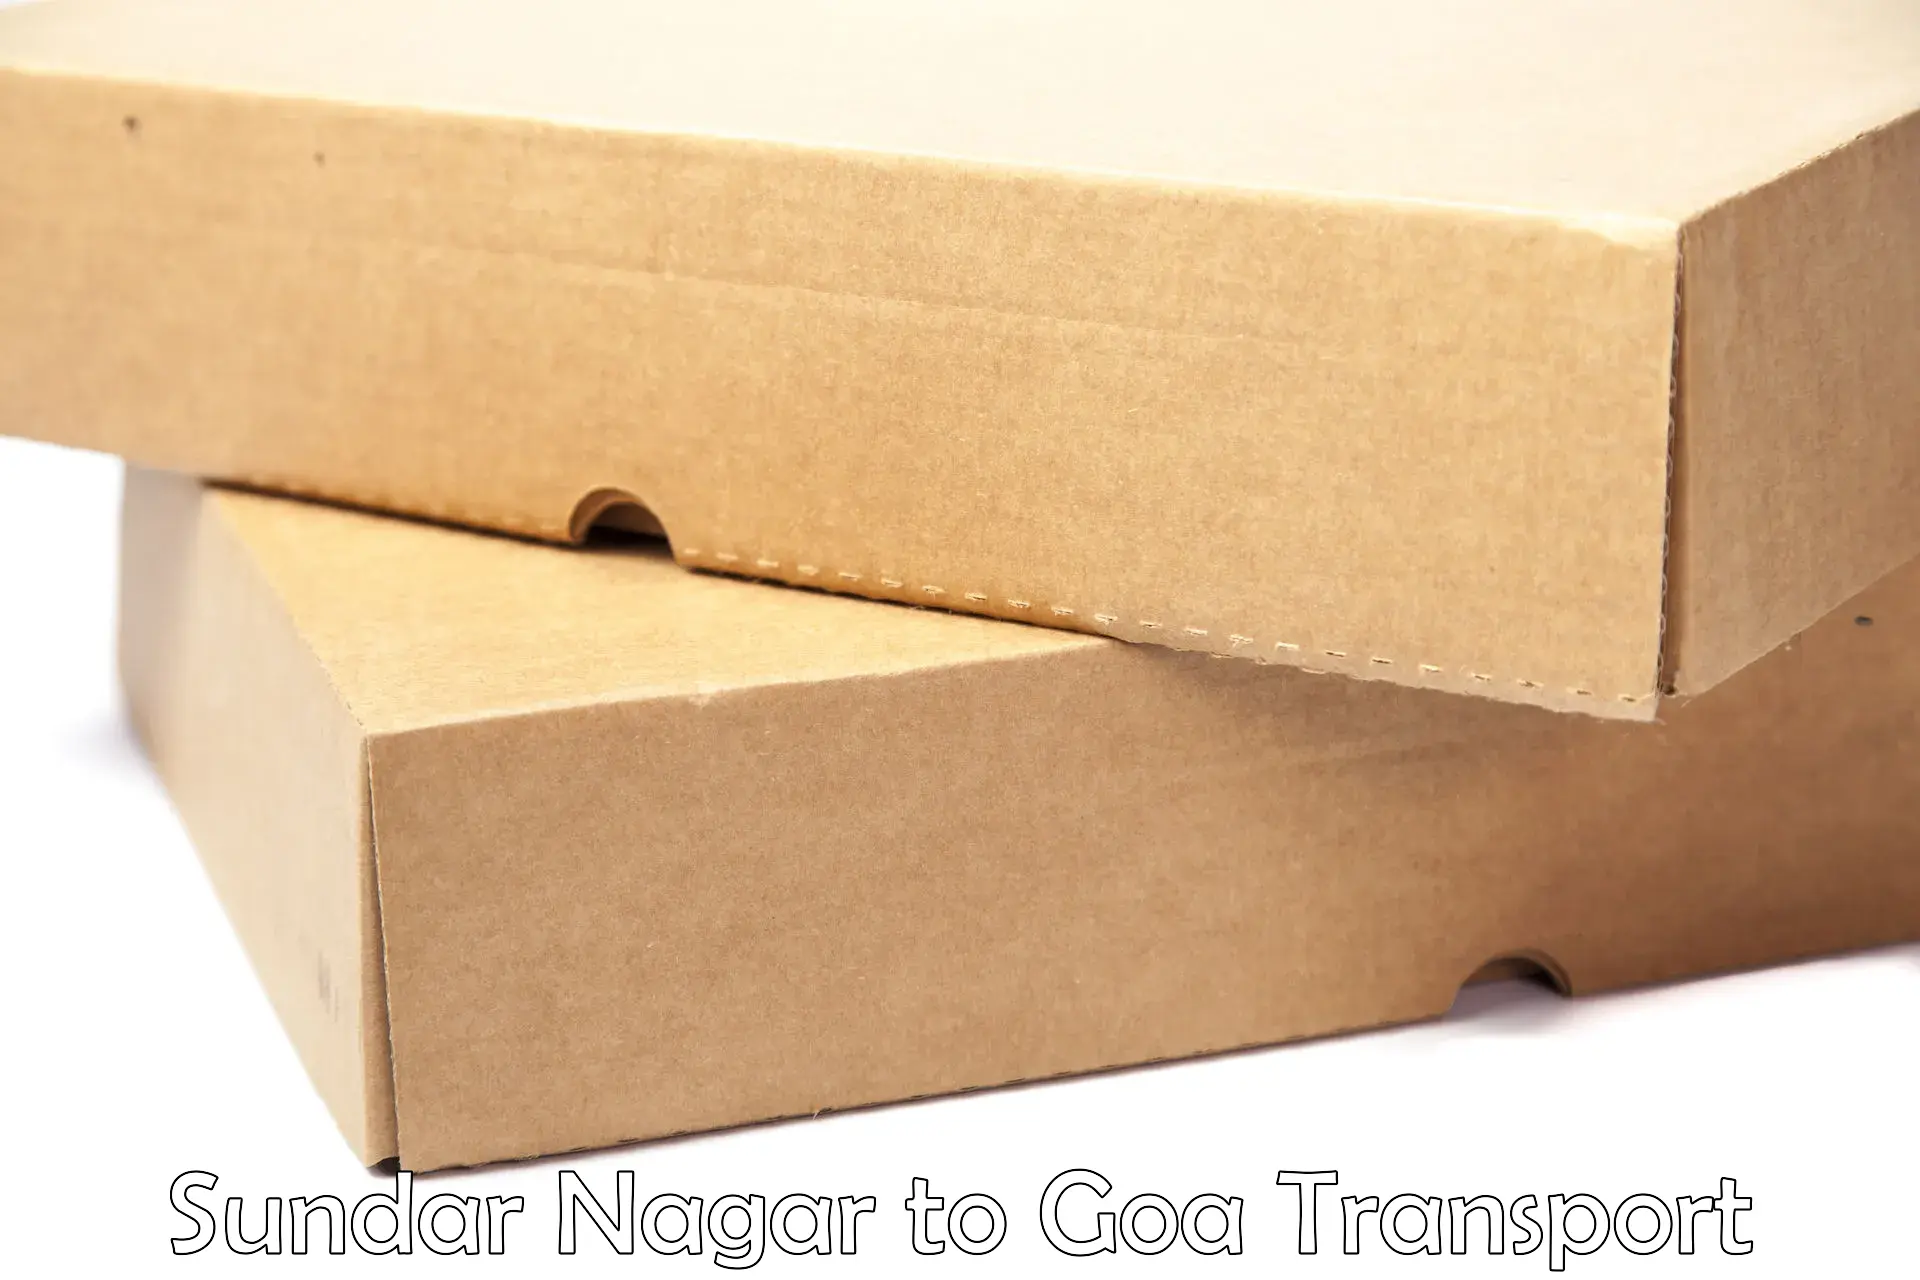 Nationwide transport services Sundar Nagar to IIT Goa